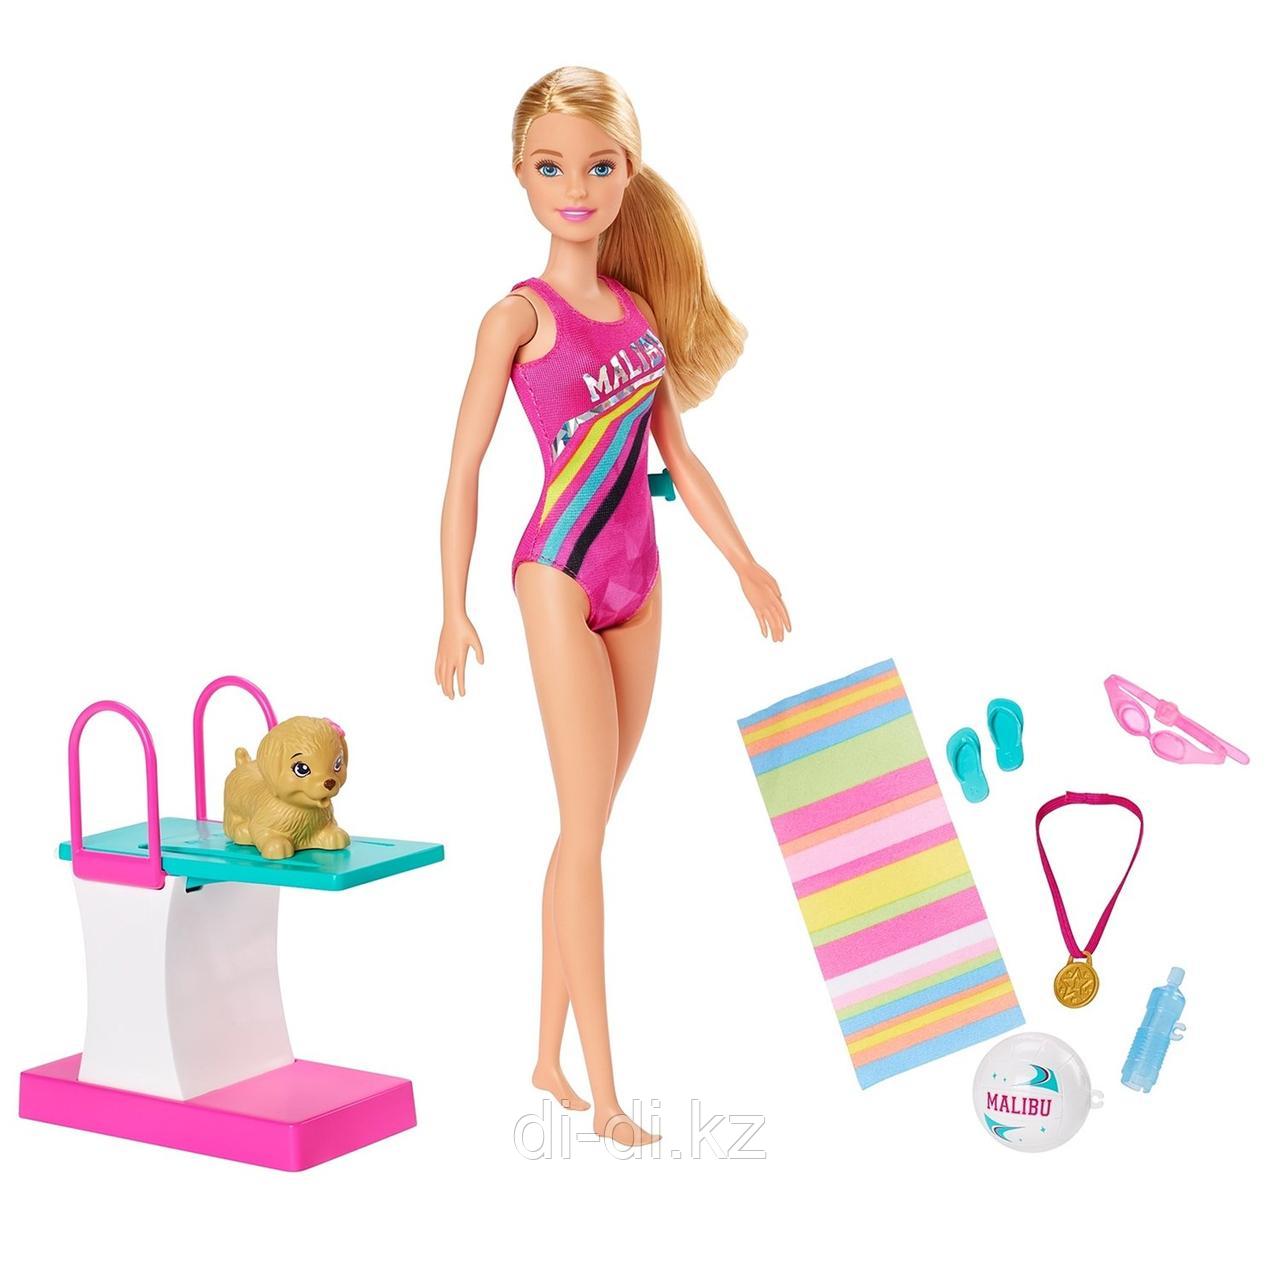 Mattel Barbie Игровой набор "Тренировка в бассейне" GHK23